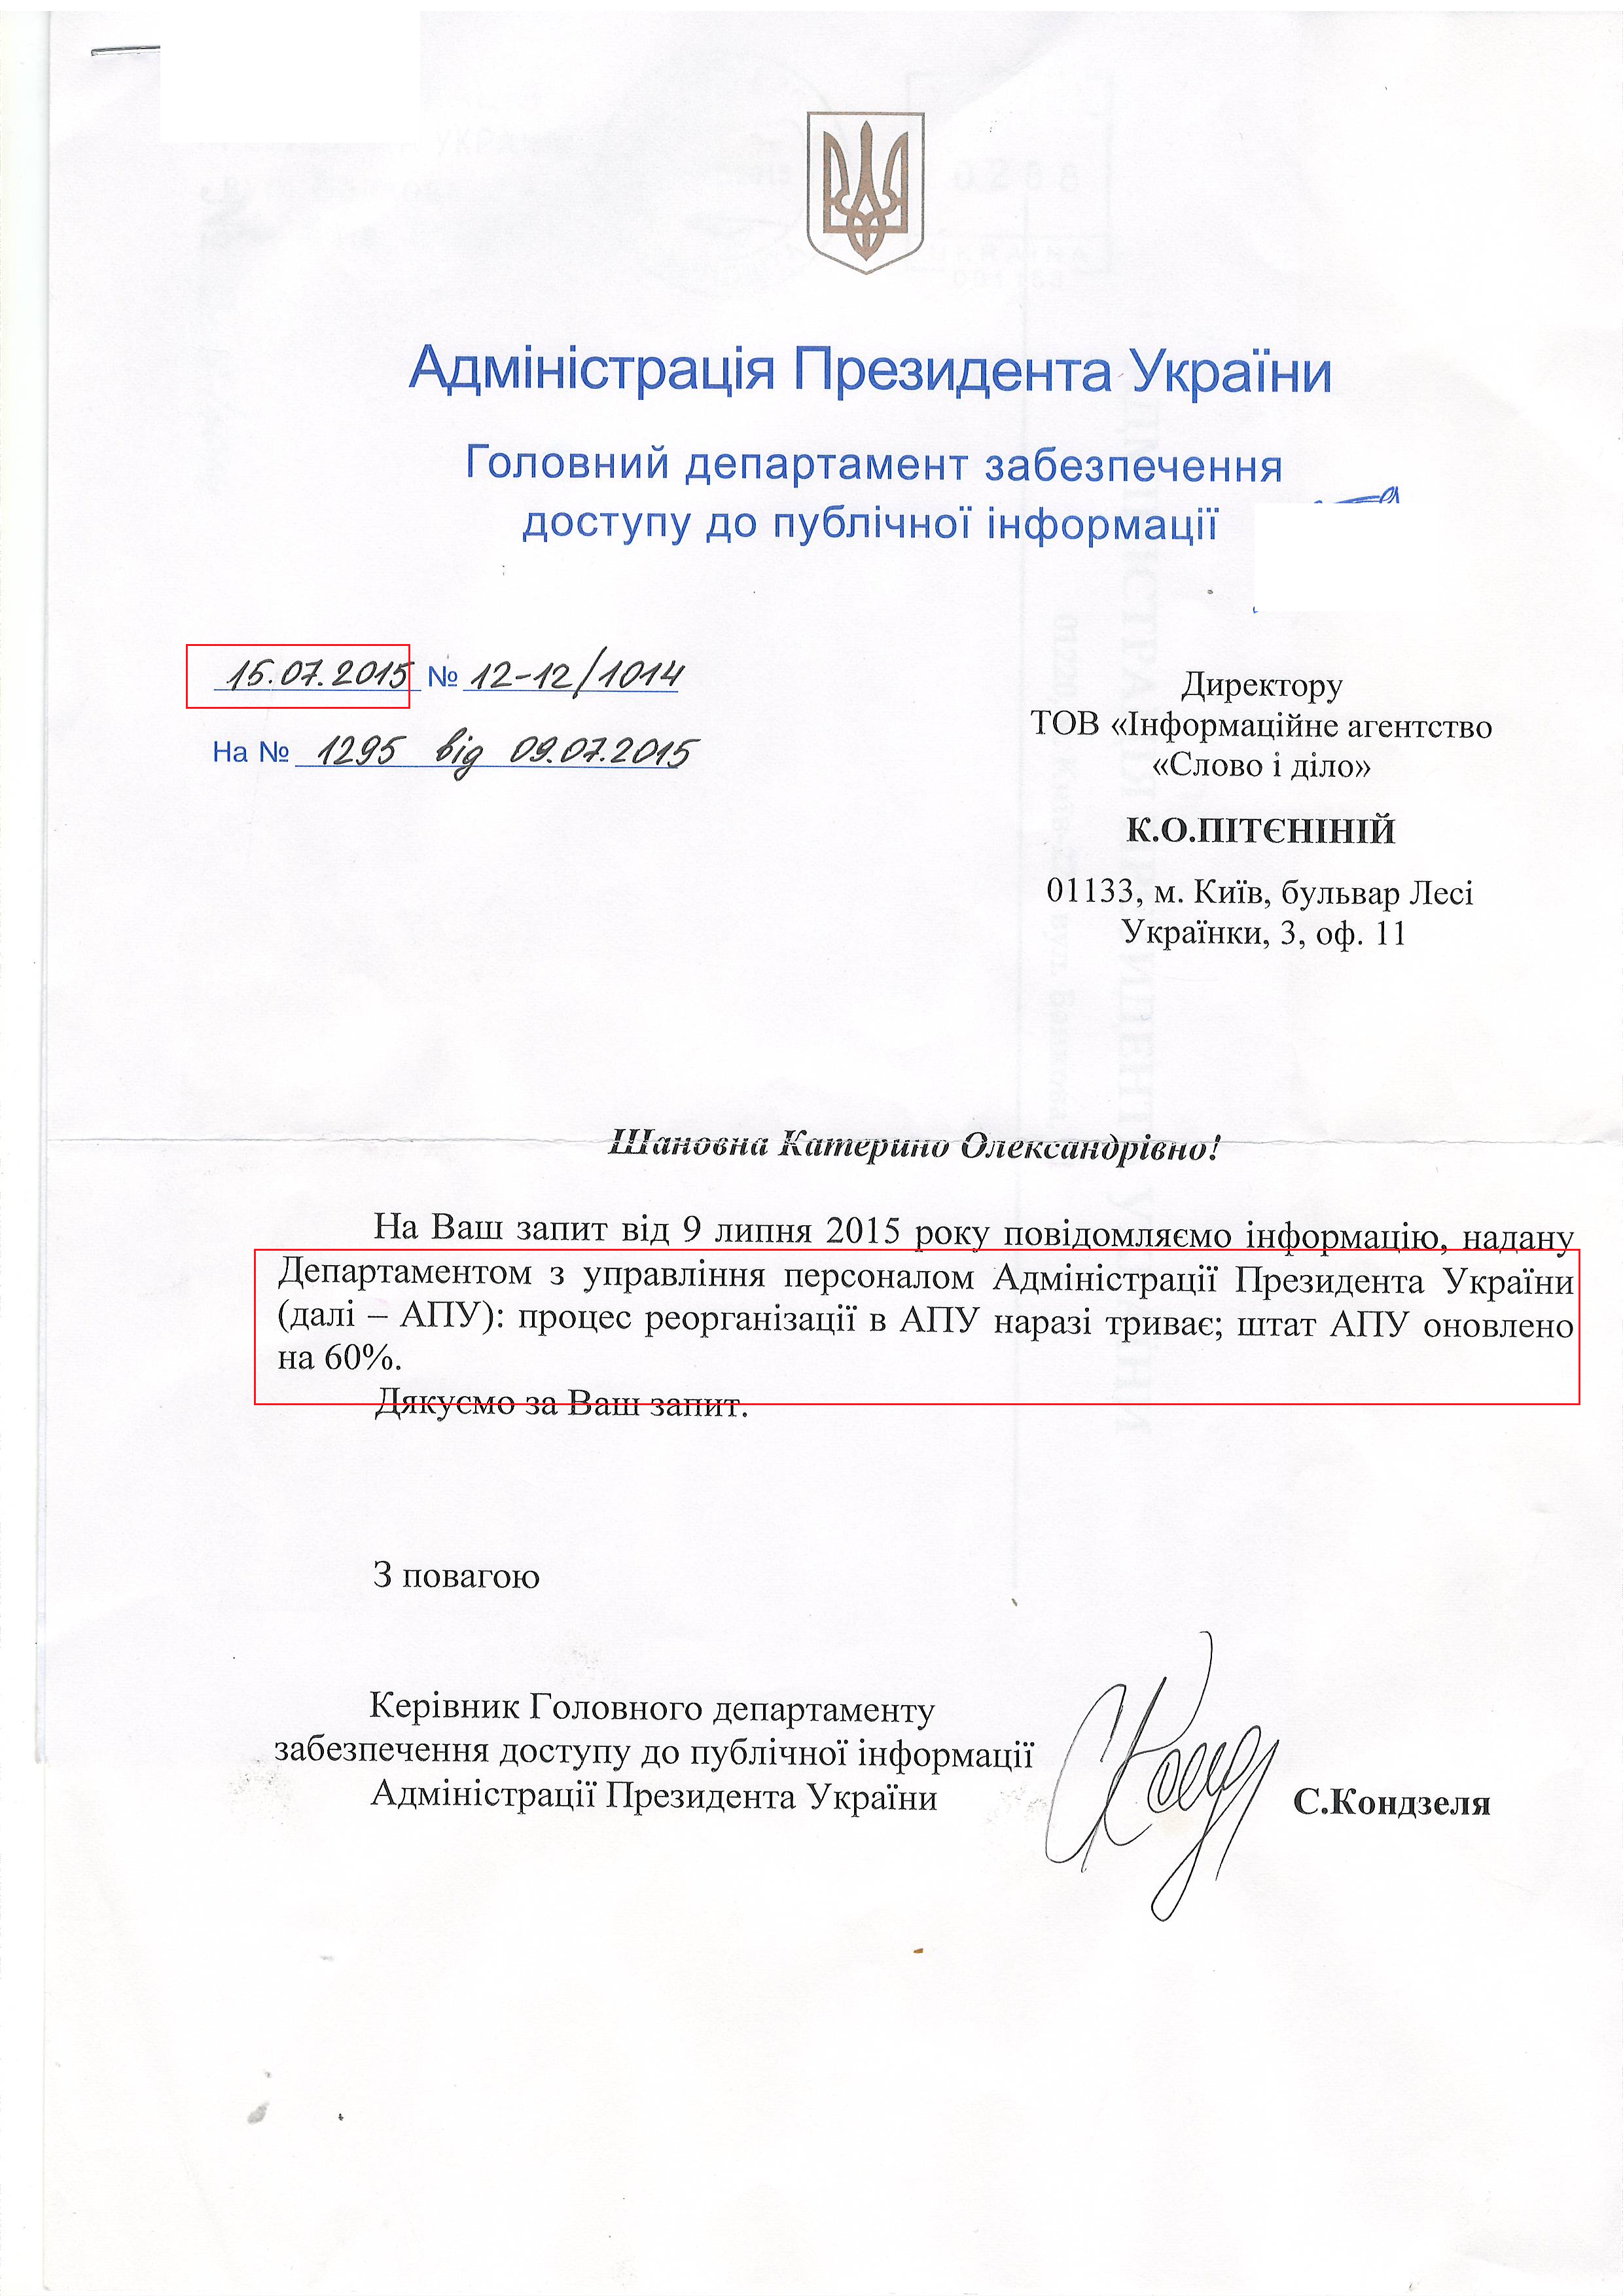 Лист Адміністрації президента України від 15 липня 2015 року